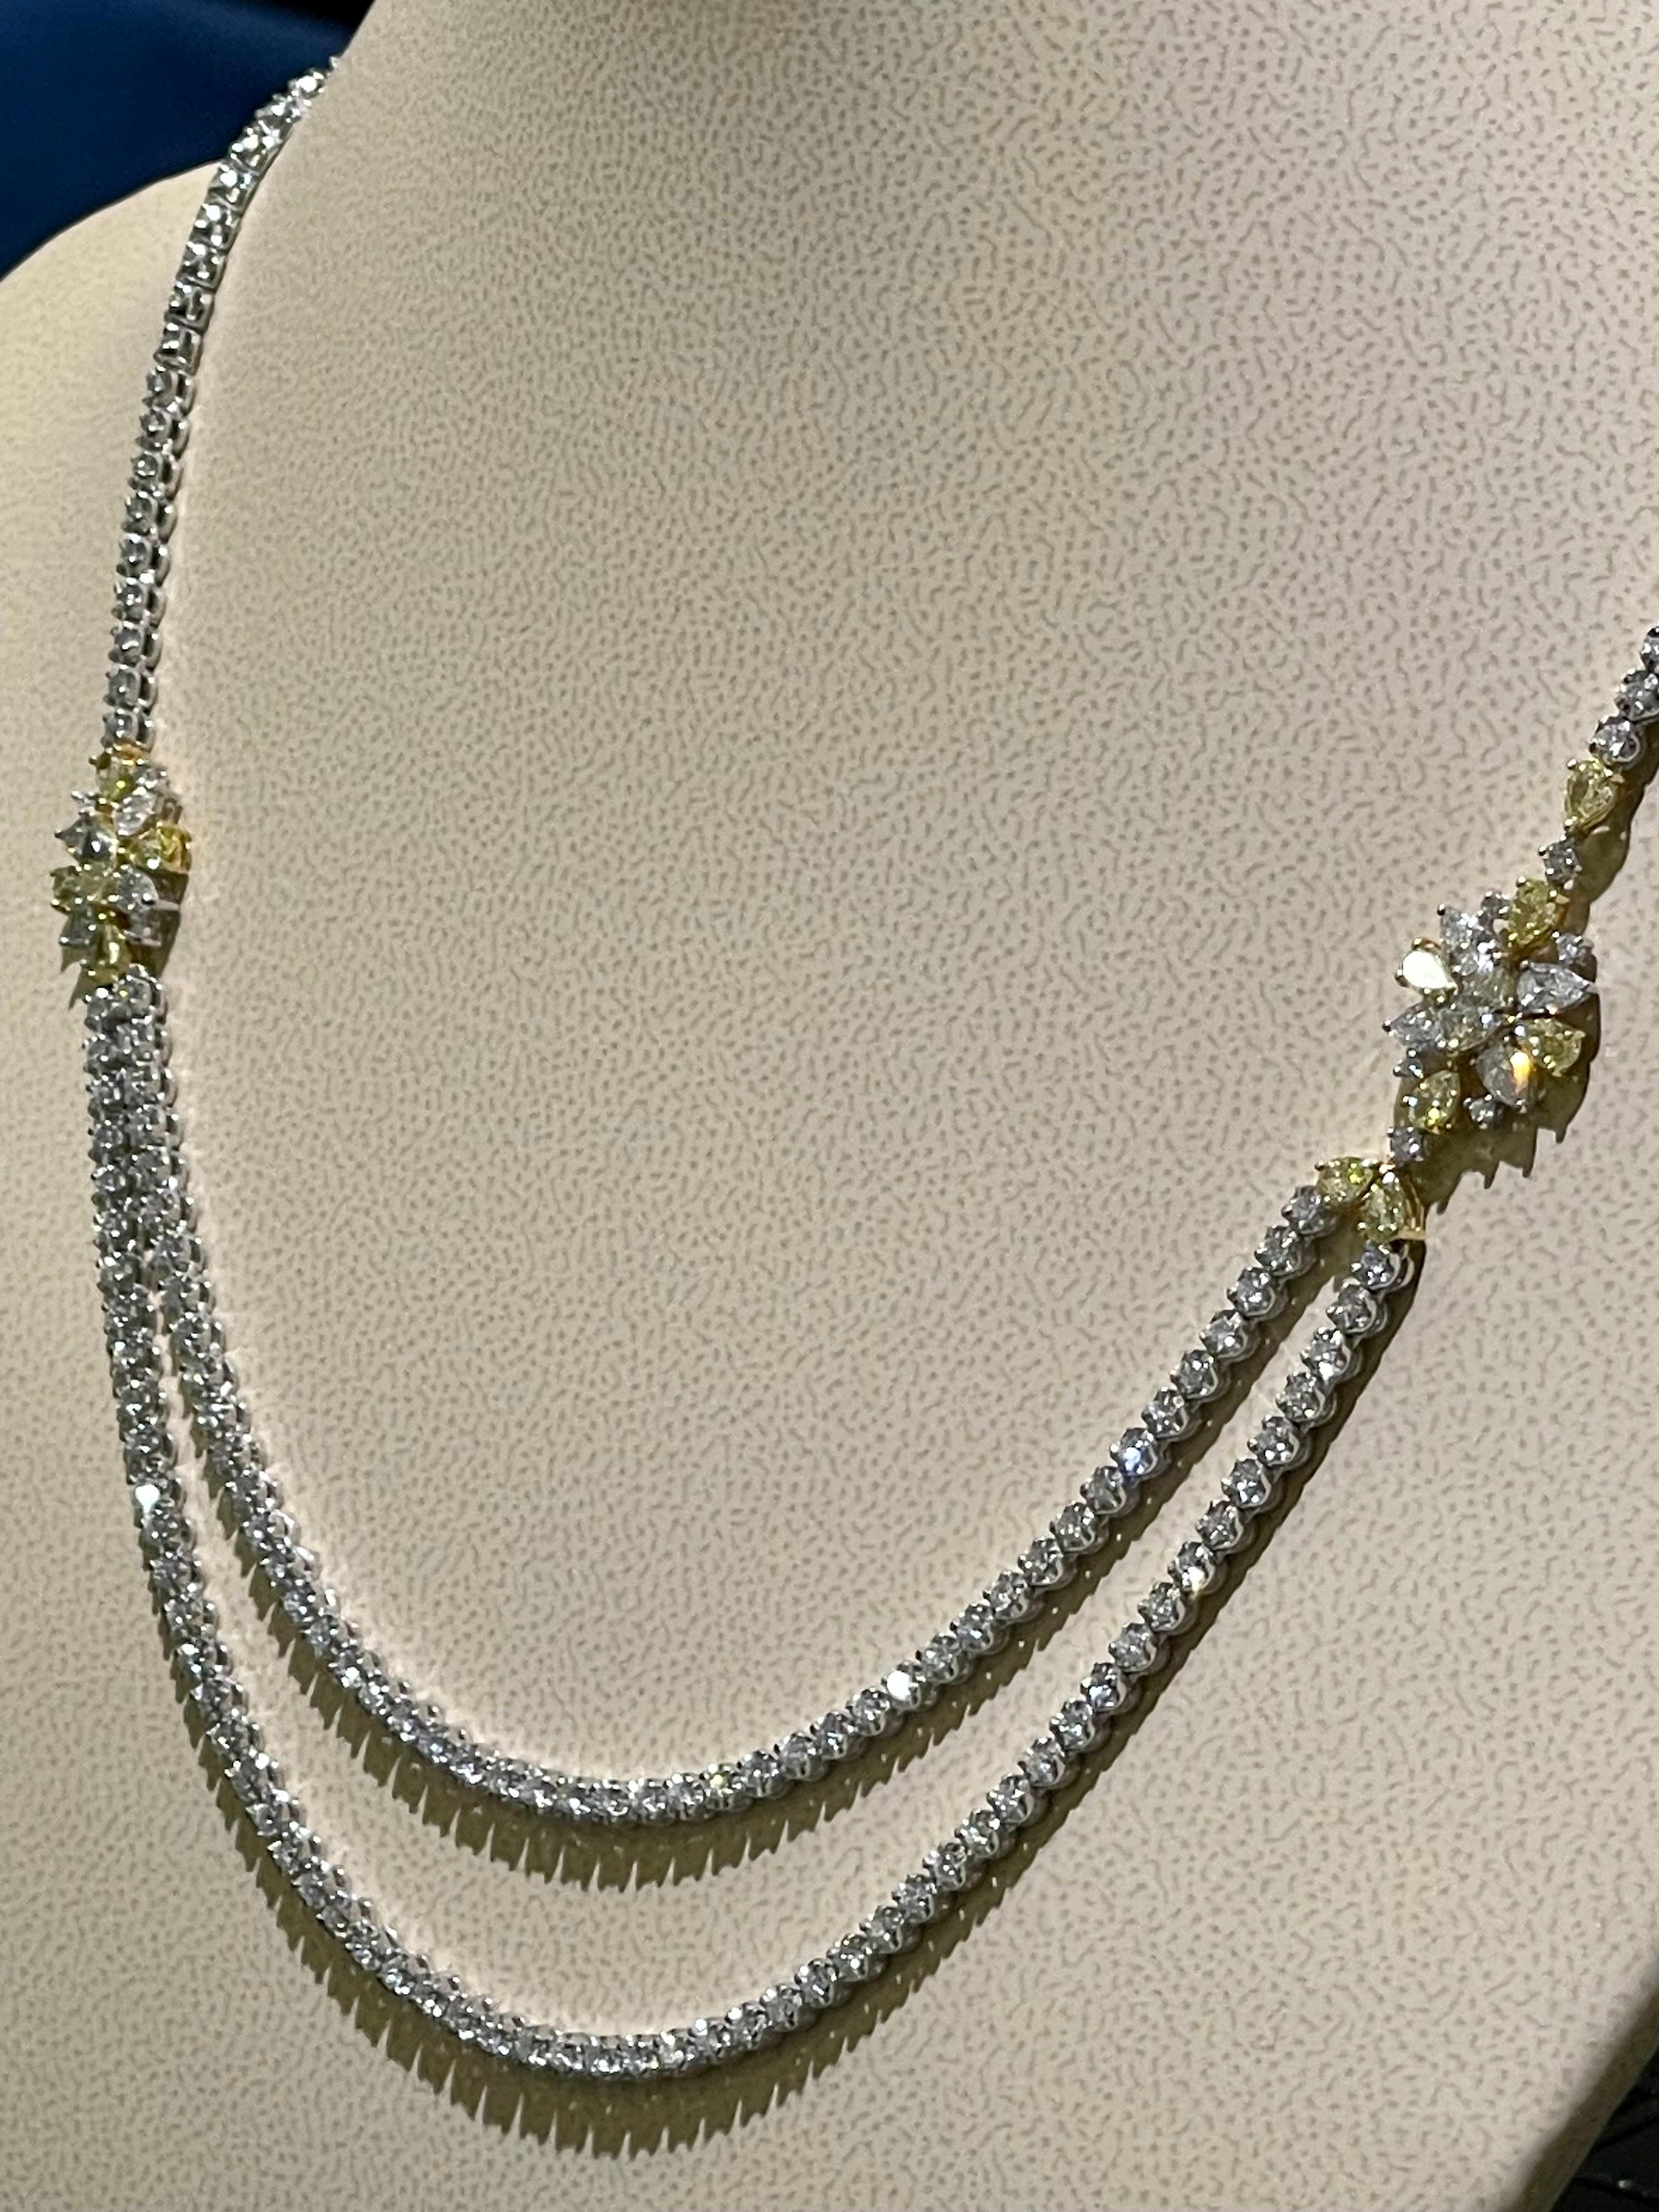 Gorgeous Weiß & Gelb Diamanten Halskette in 18k Weißgold .

Gesamtkaratgewicht der Diamanten im Rundschliff - 4,28cts,

Gesamtkaratgewicht der birnenförmigen Diamanten - 1,09cts,

Gesamtkaratgewicht in gelben Fancy-Diamanten - 1,91cts

Länge um den